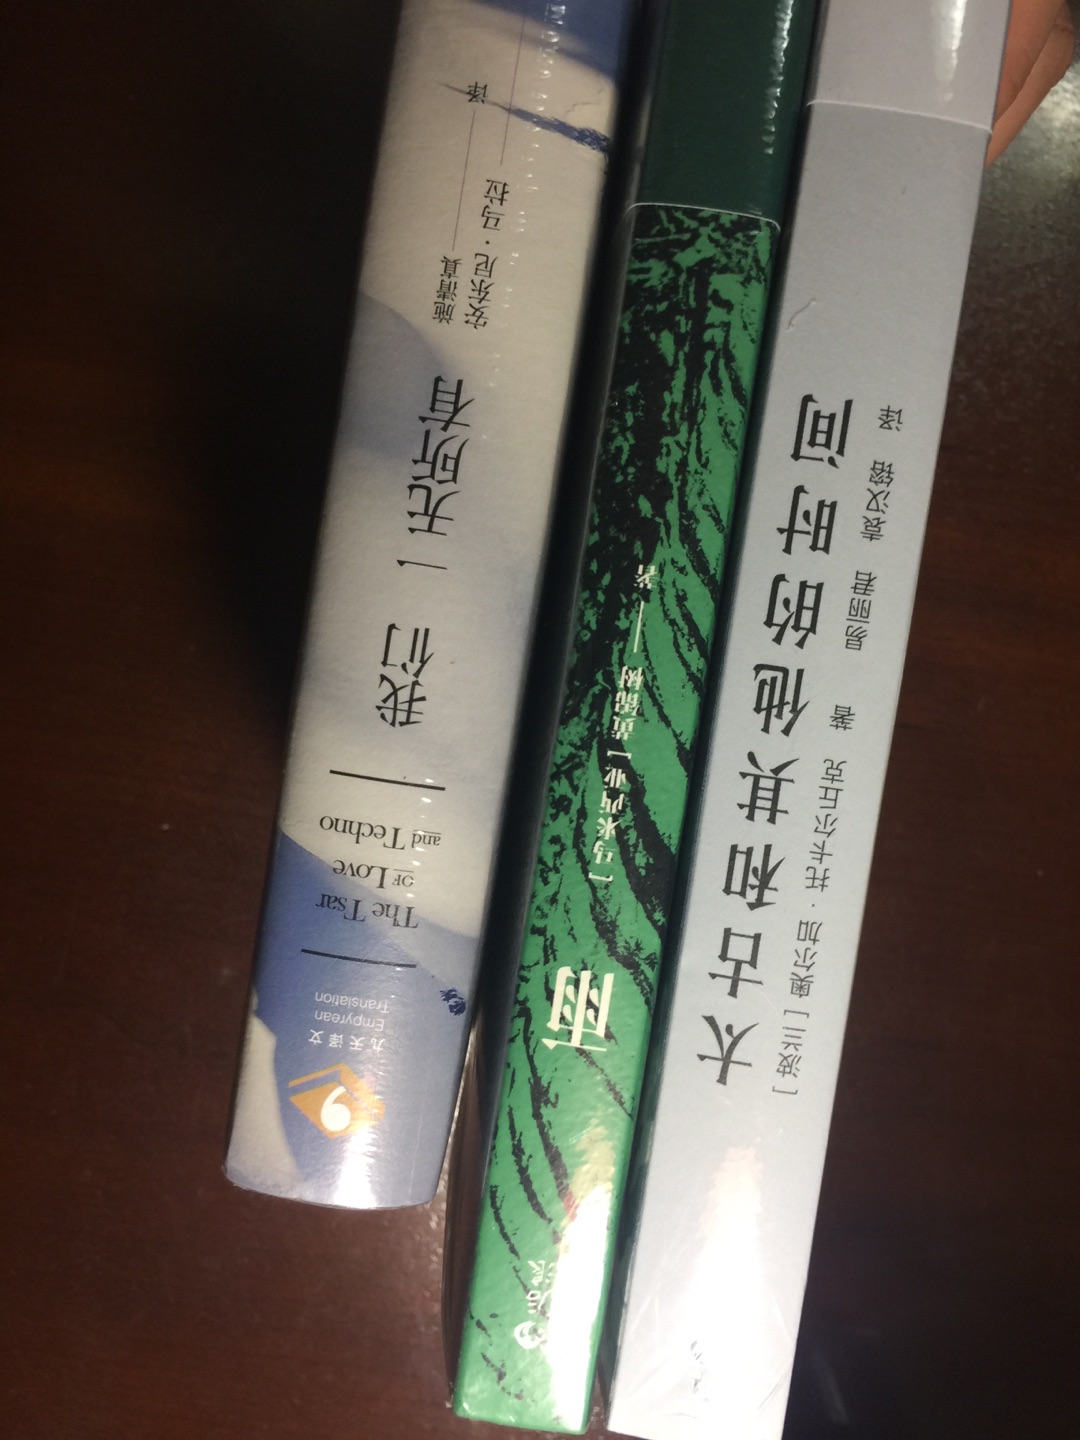 有认识的人说“华语文学”和“中国文学”不是一个含义，这本书恰可以体现这种微妙的差别。中国少有的热带气候，下个不停的雨，奇妙的家族…有种东南亚的气质，又让我回想起拉美